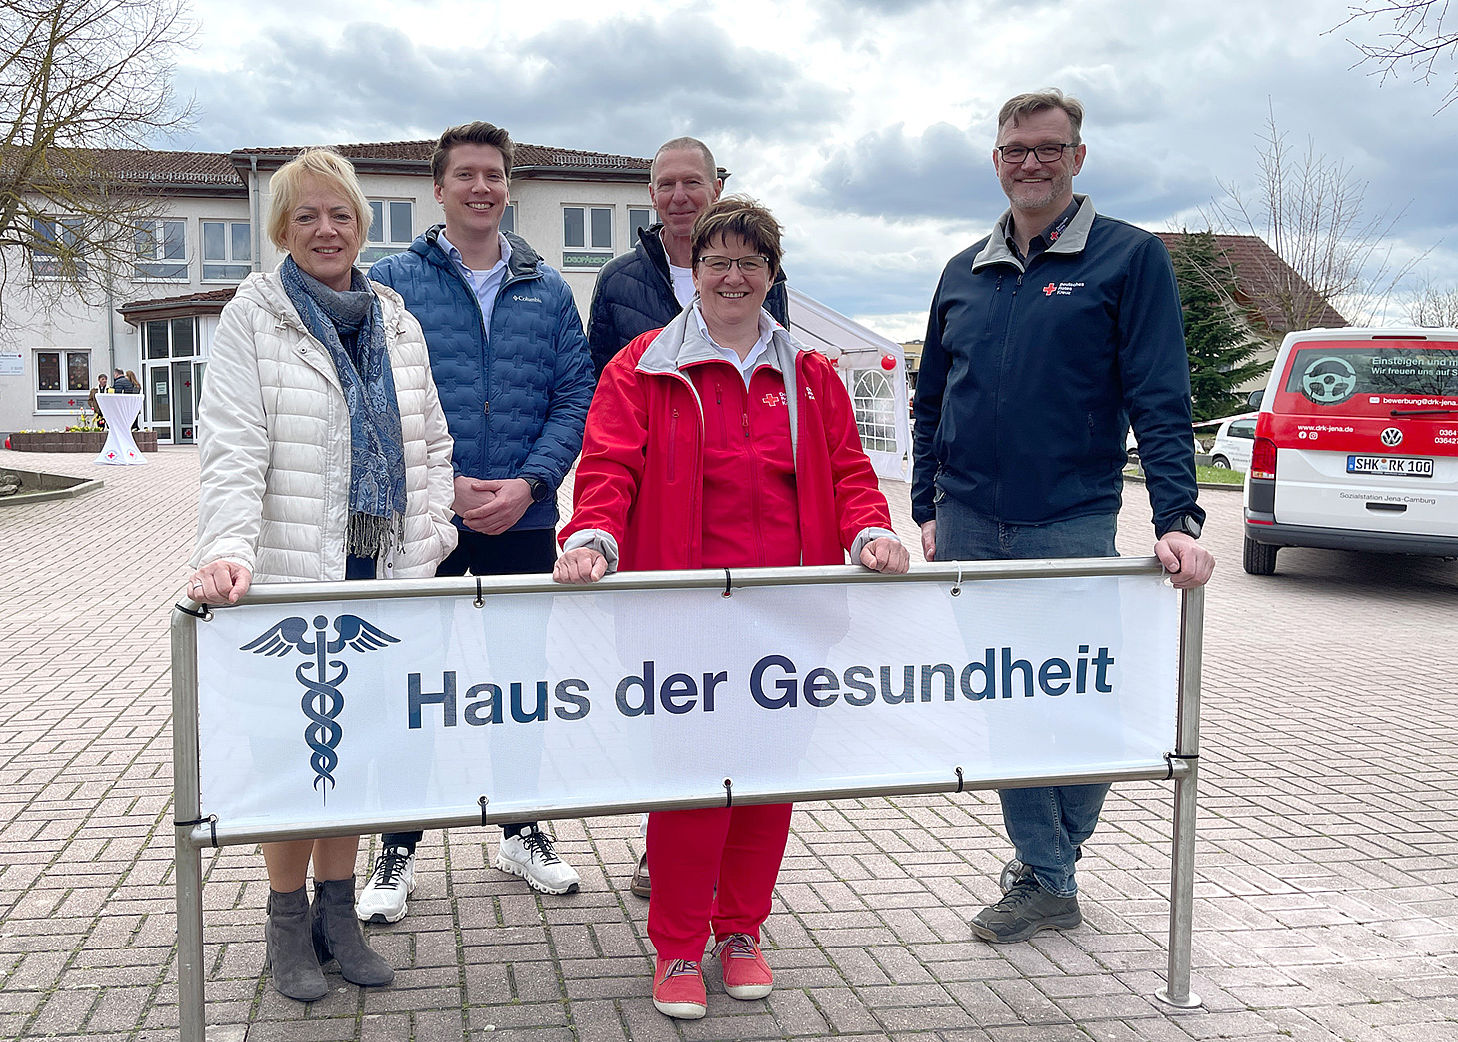 DRK-Kreisverband Jena-Eisenberg-Stadtroda e.V.: Einweihung Haus der Gesundheit in Dorndorf-Steudnitz